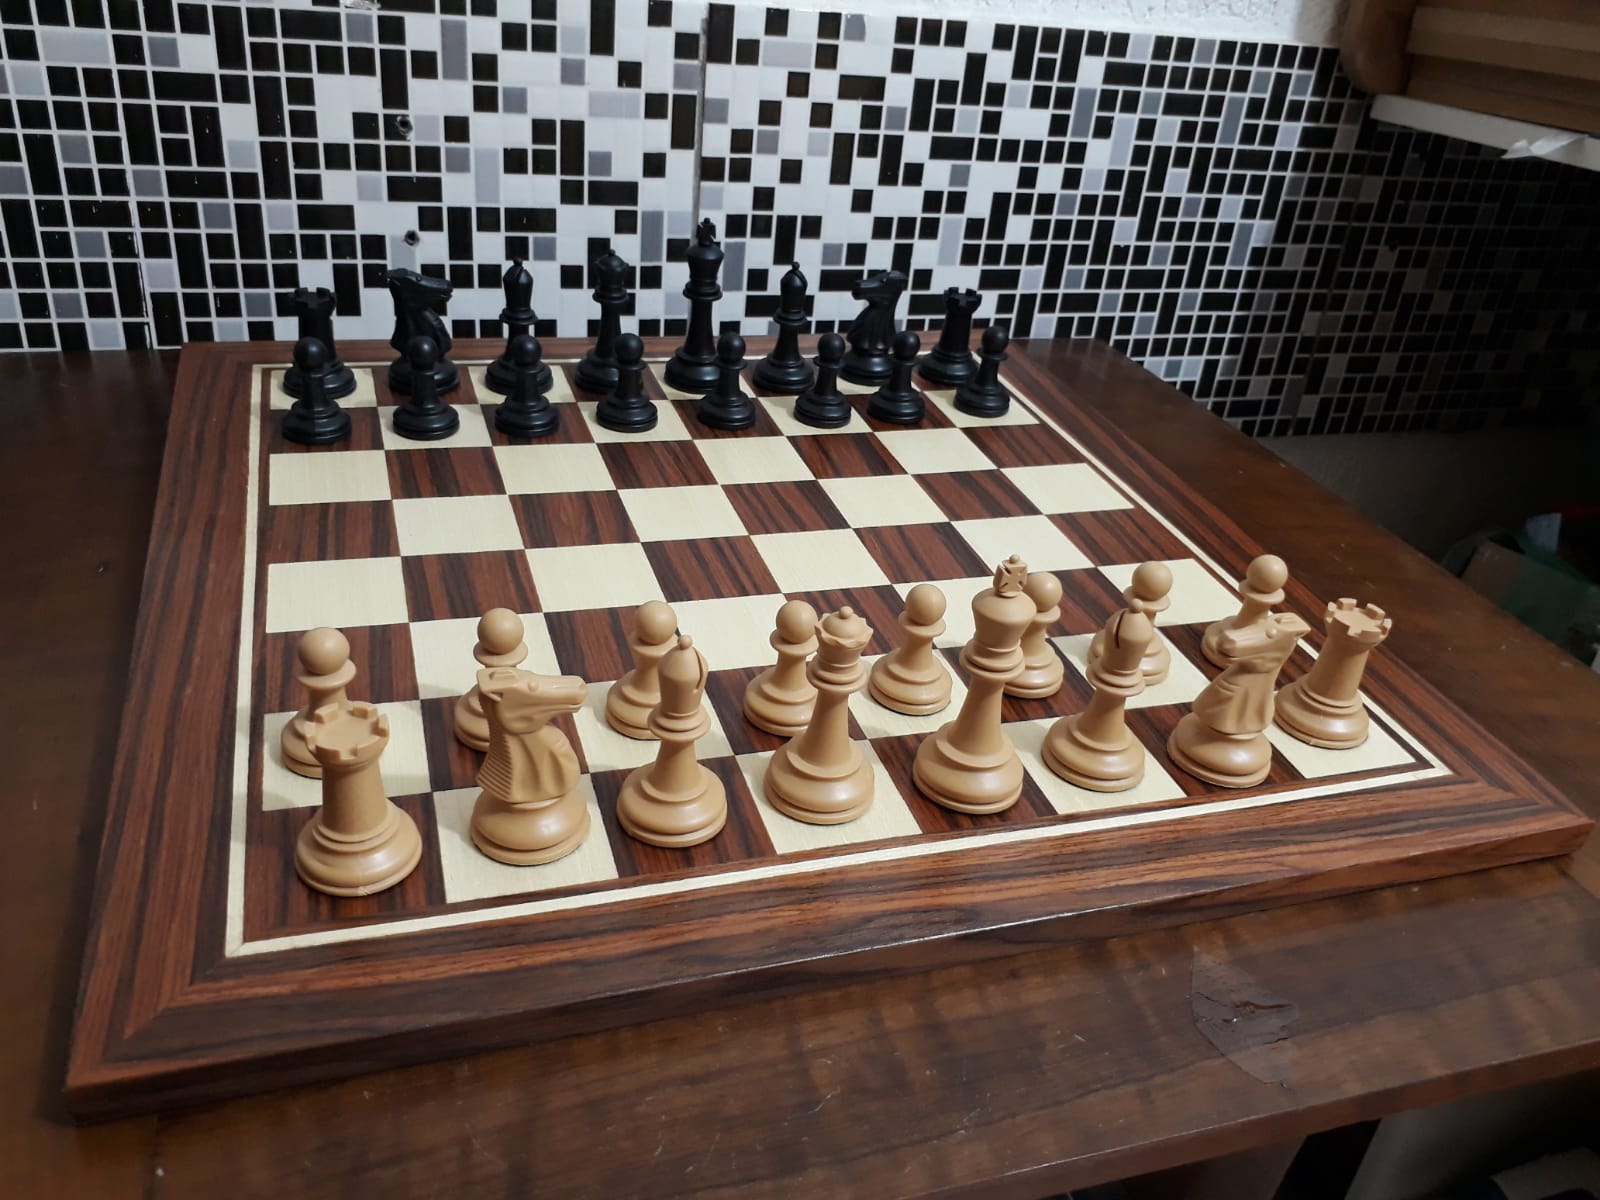 Kits - A lojinha de xadrez que virou mania nacional!